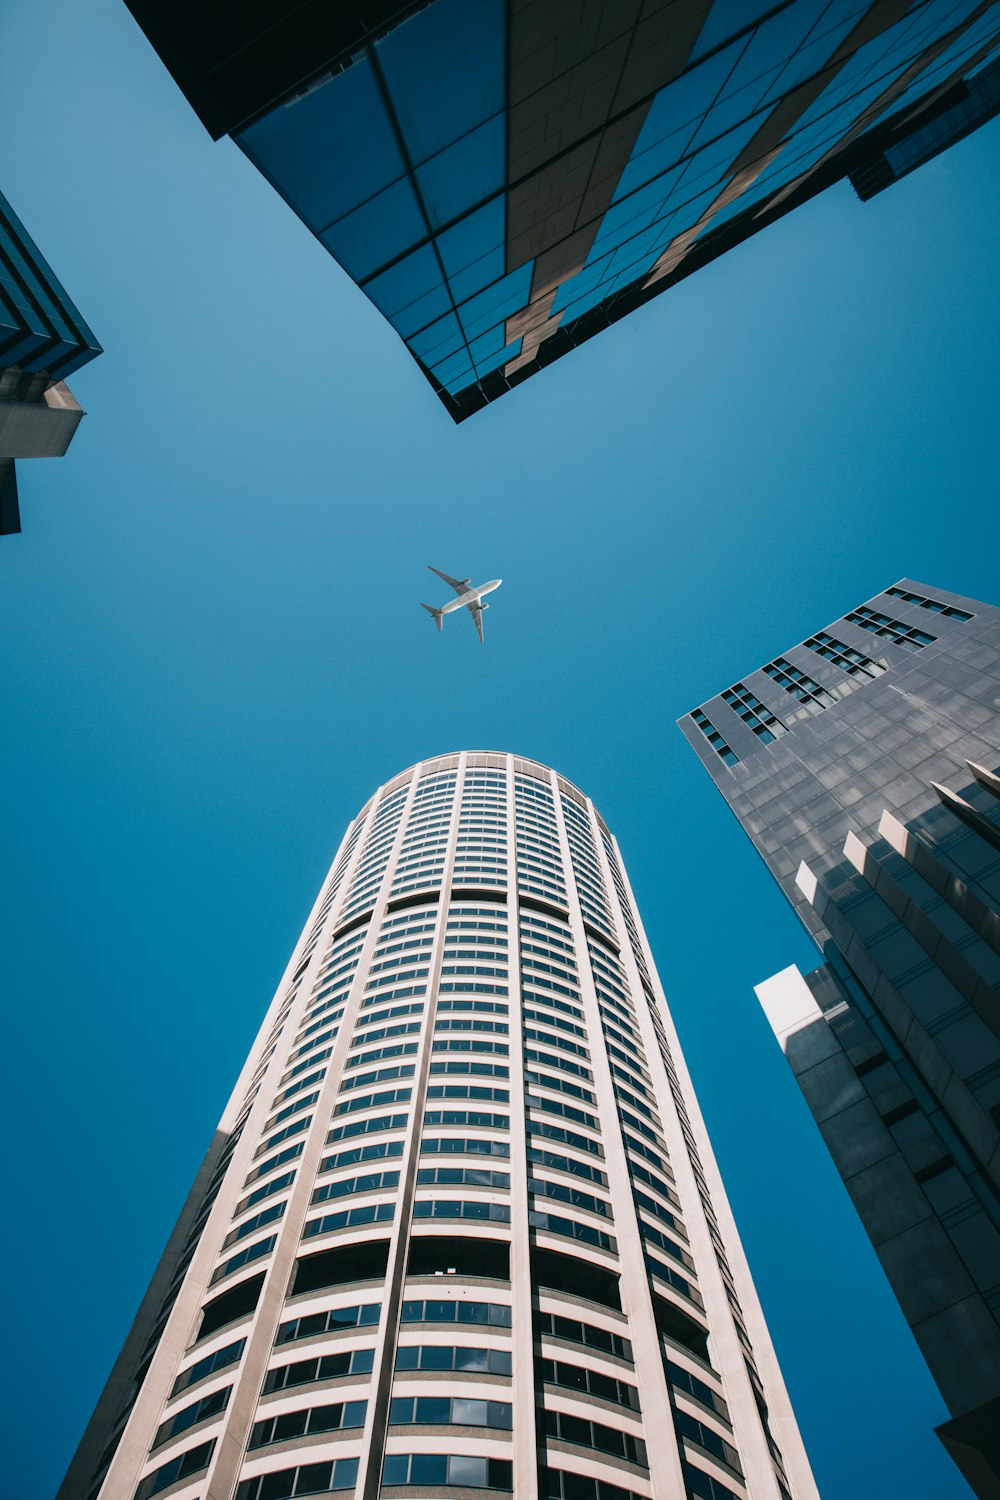 Un avion volant dans le ciel au-dessus d’un grand immeuble